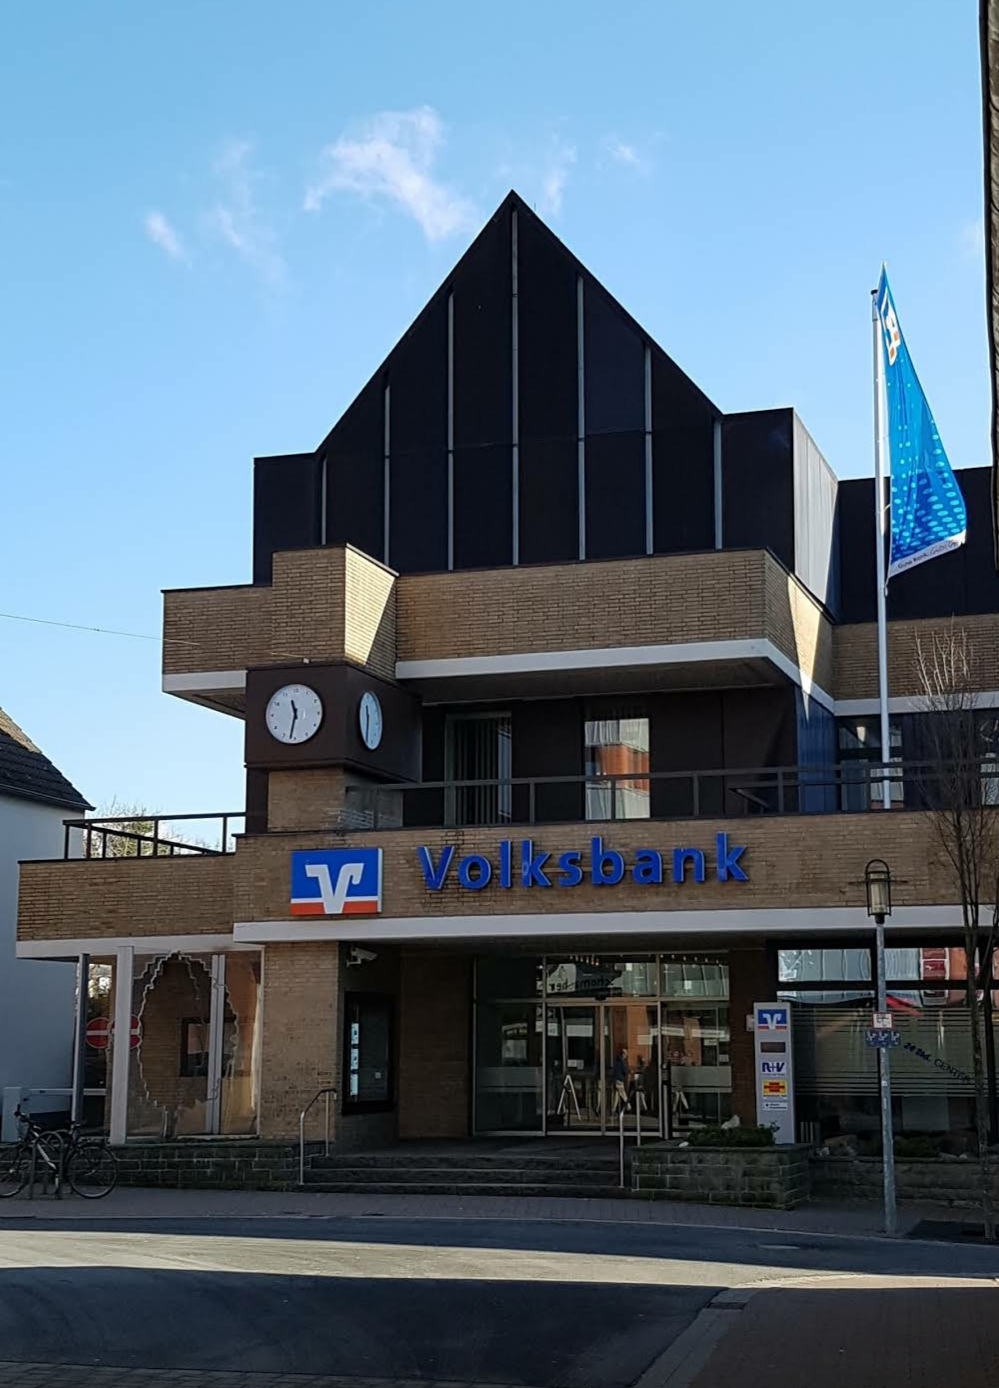 Volksbank
59302 Oelde